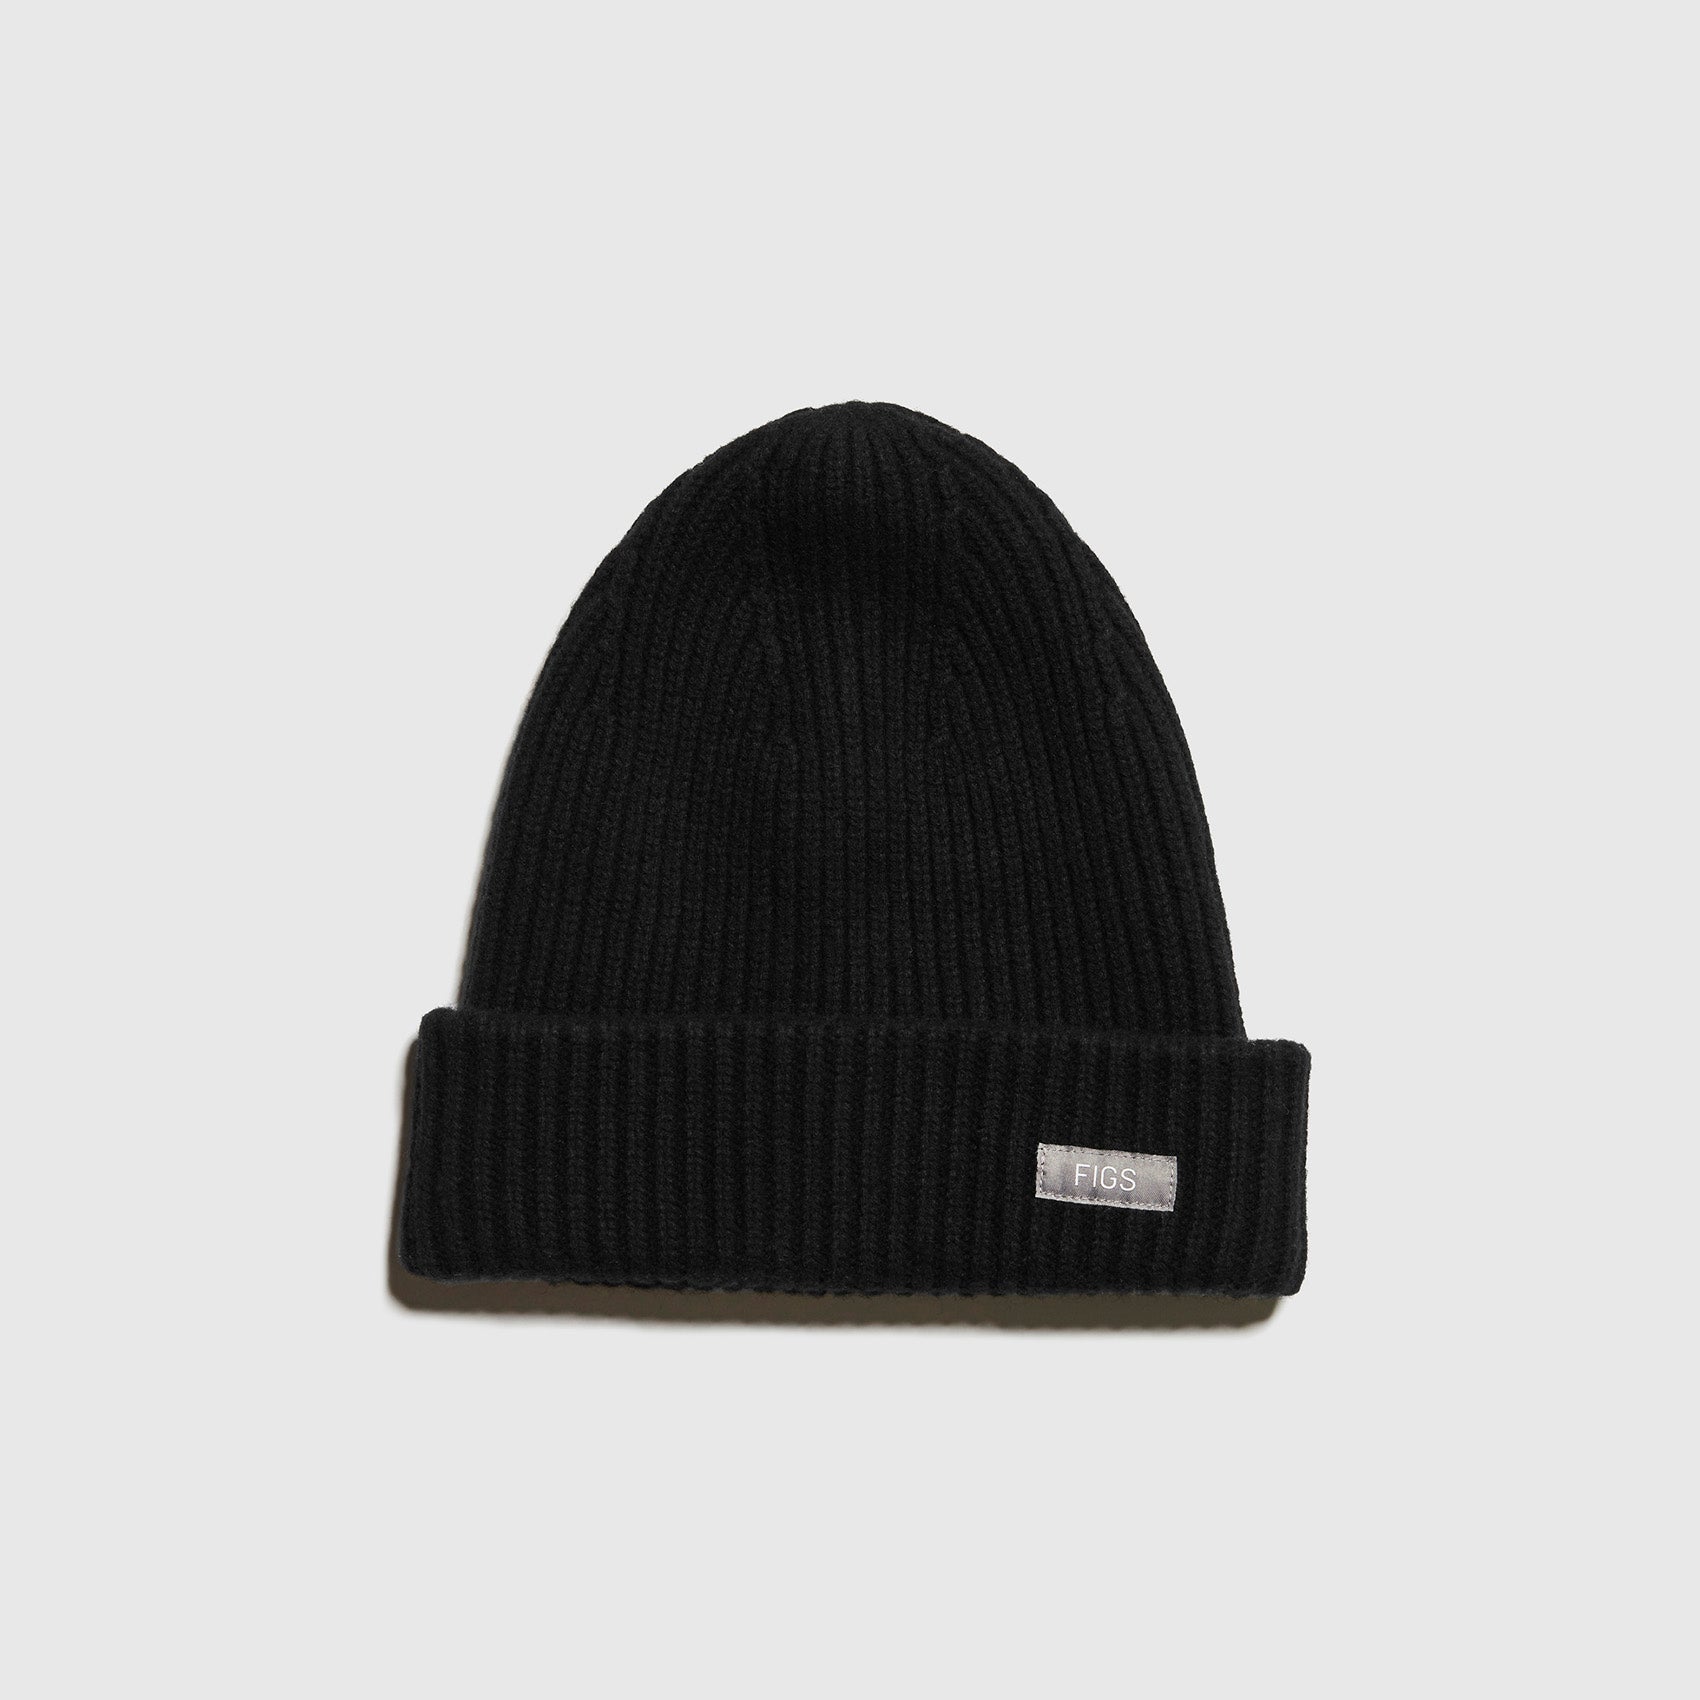 Chapeau / bonnet en laine